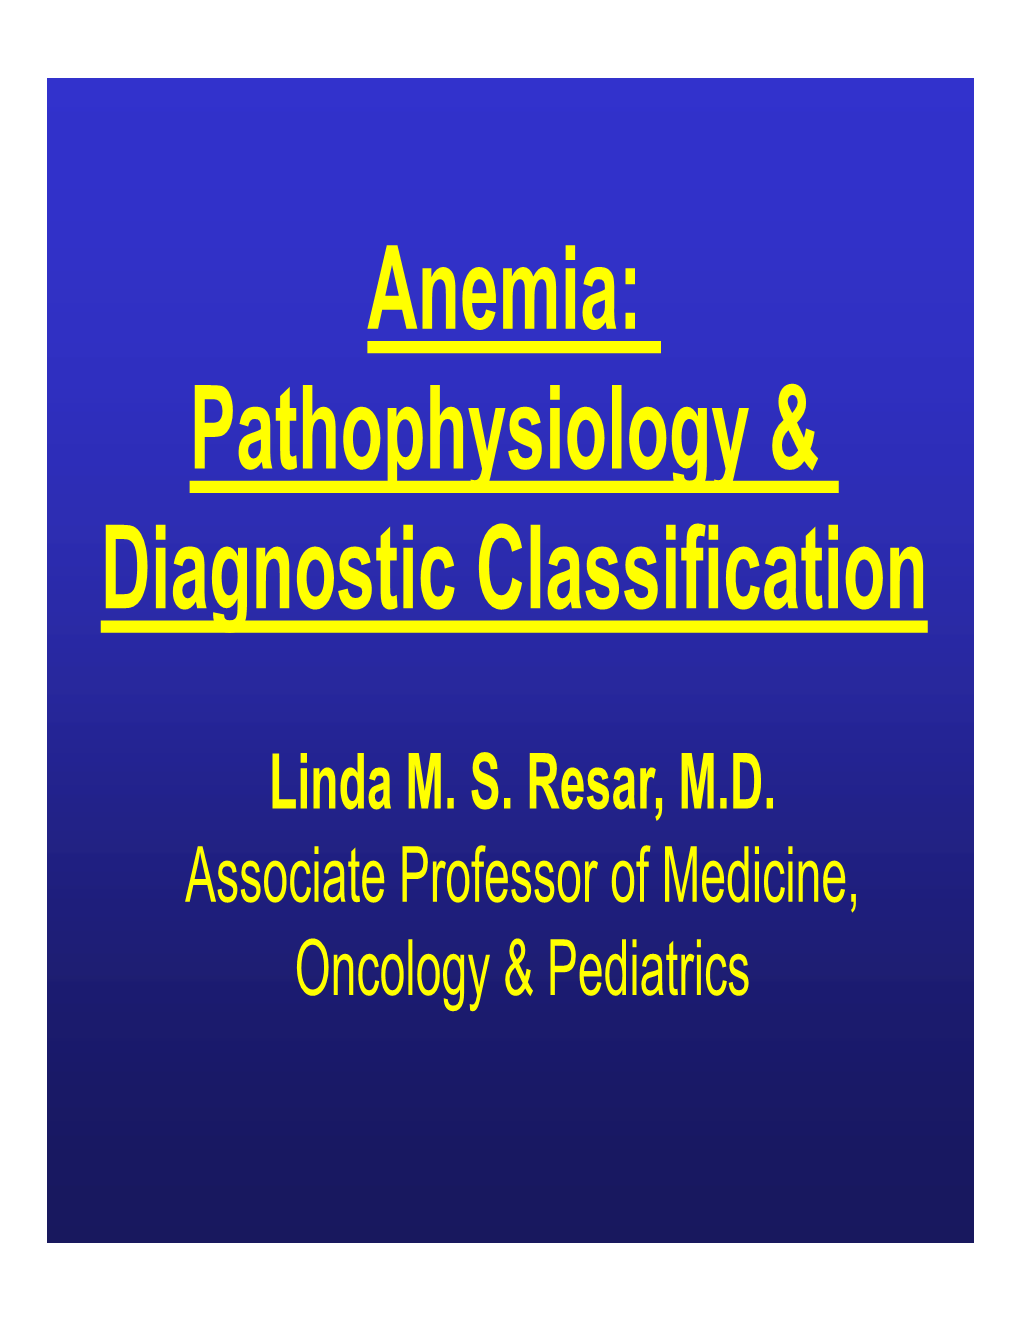 Anemia: Pathophysiology & Diagnostic Classification